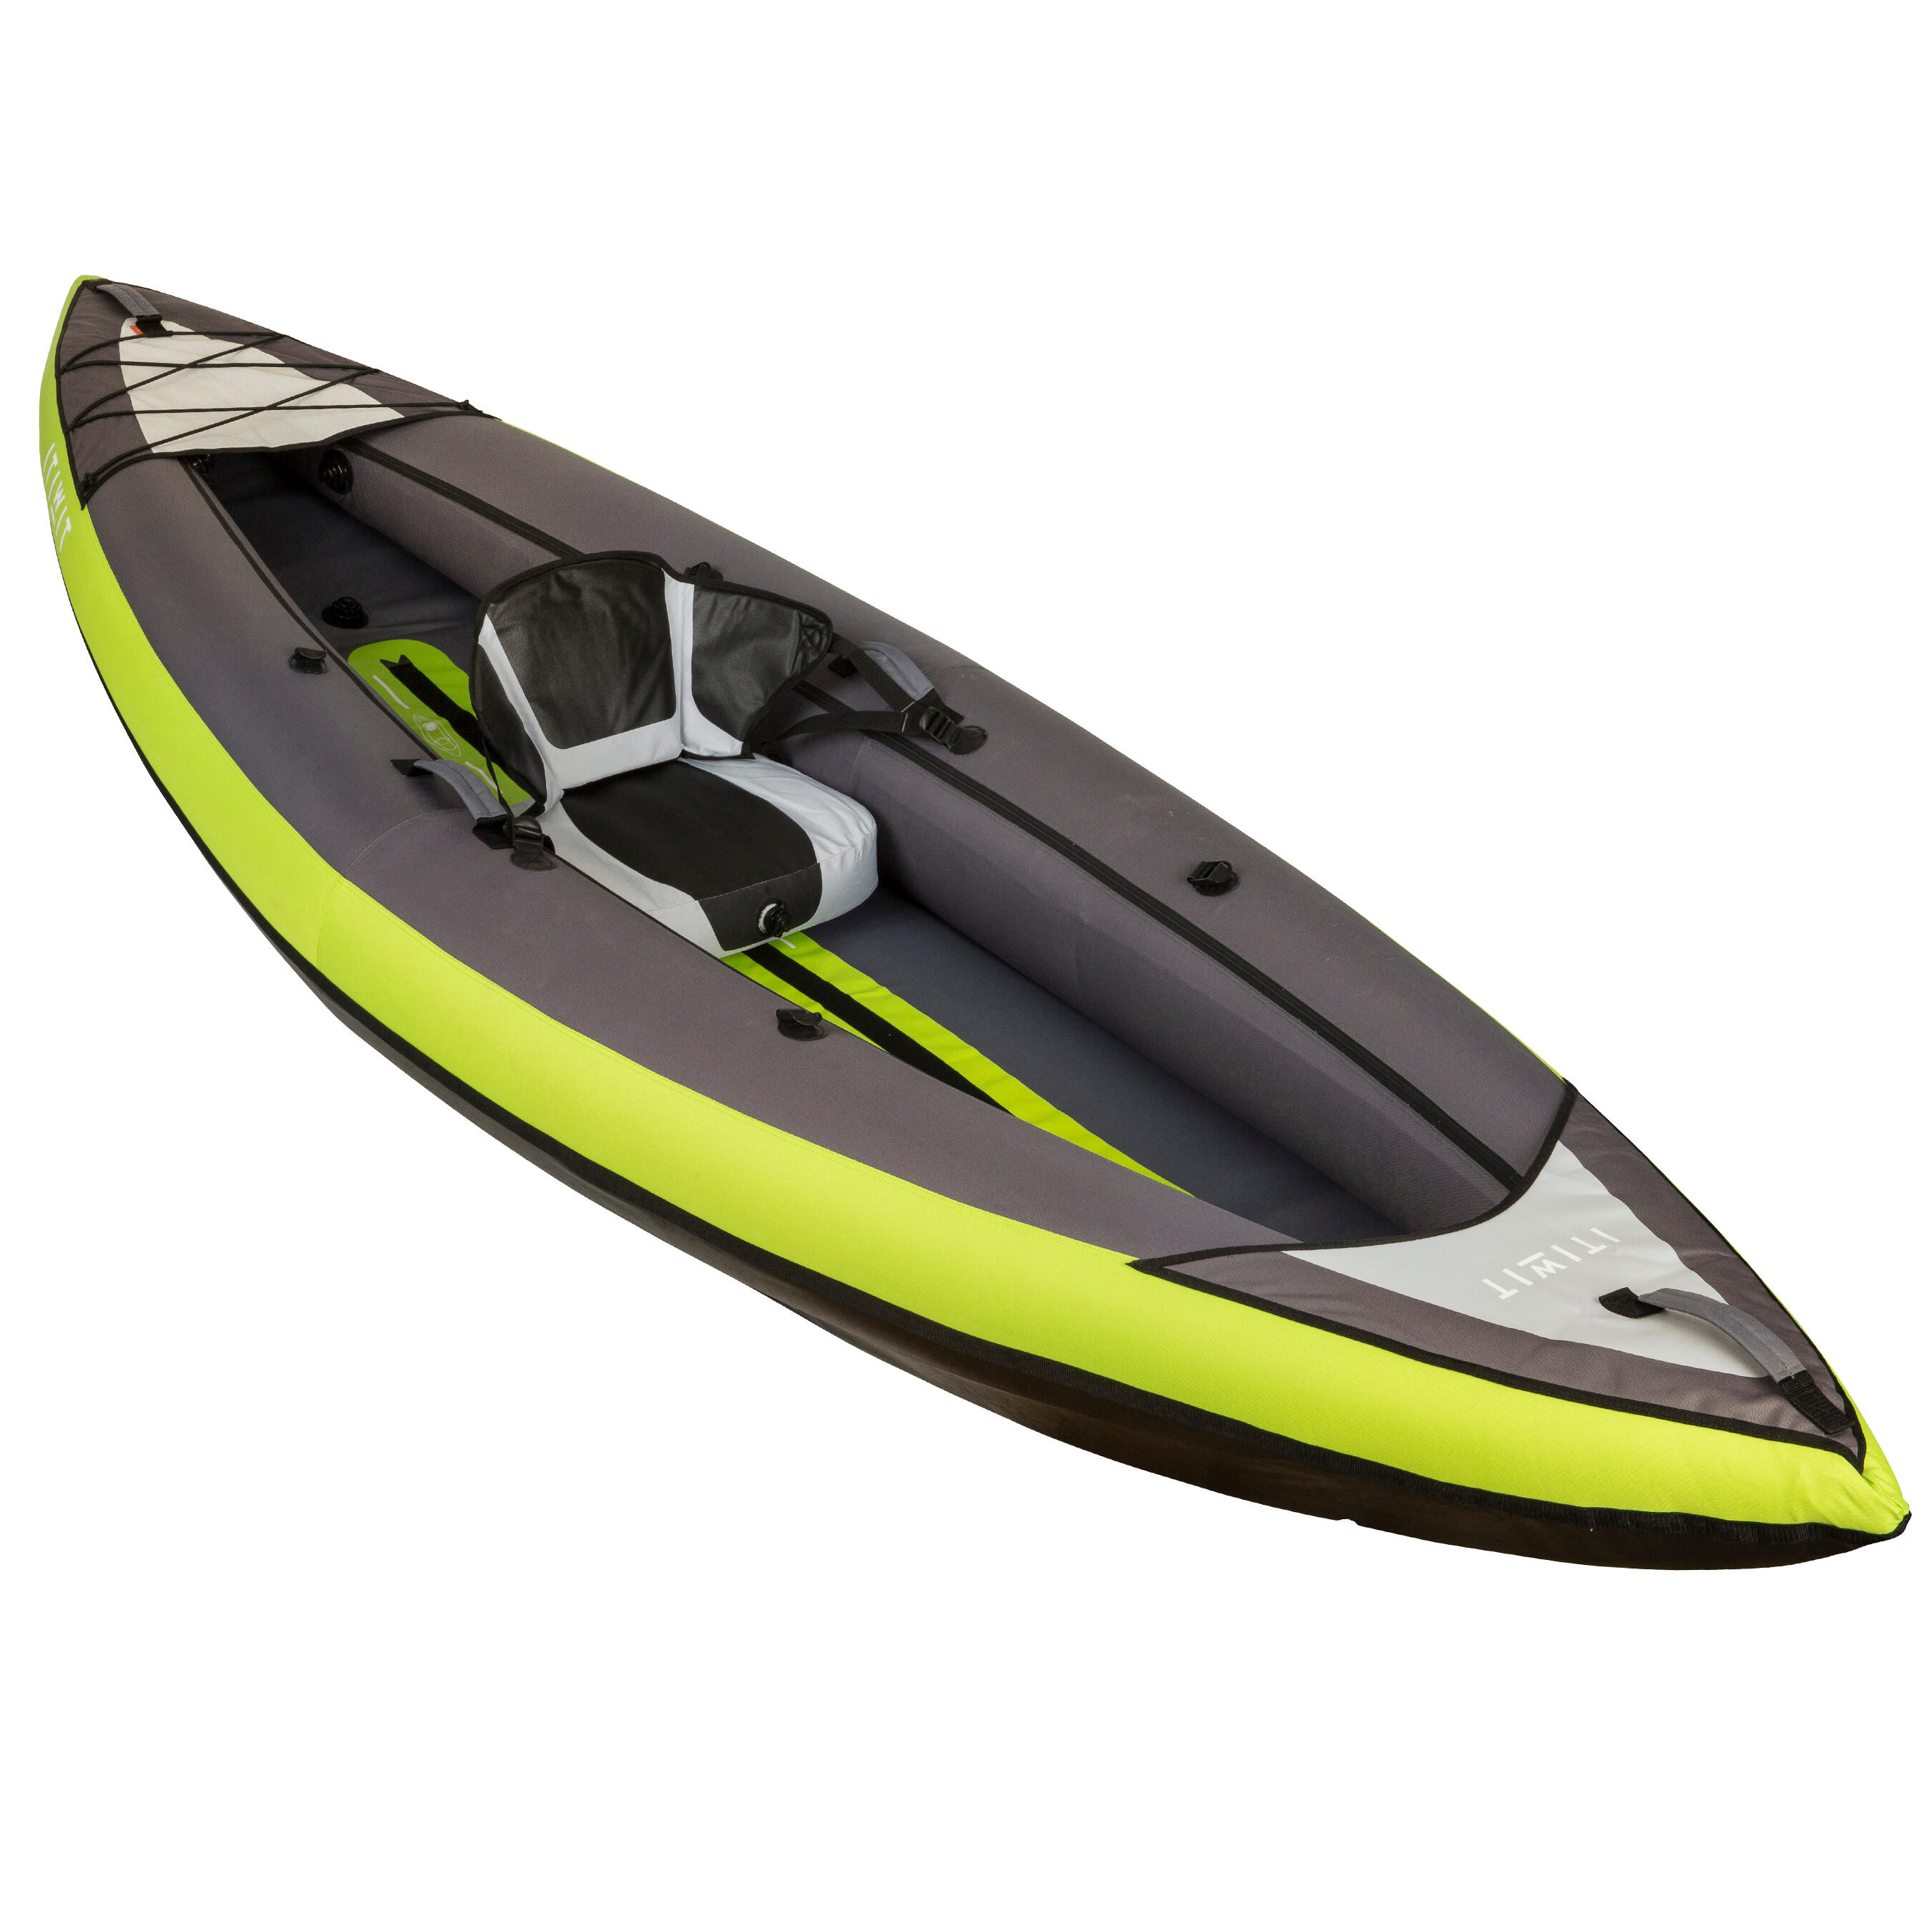 decathlon kayak